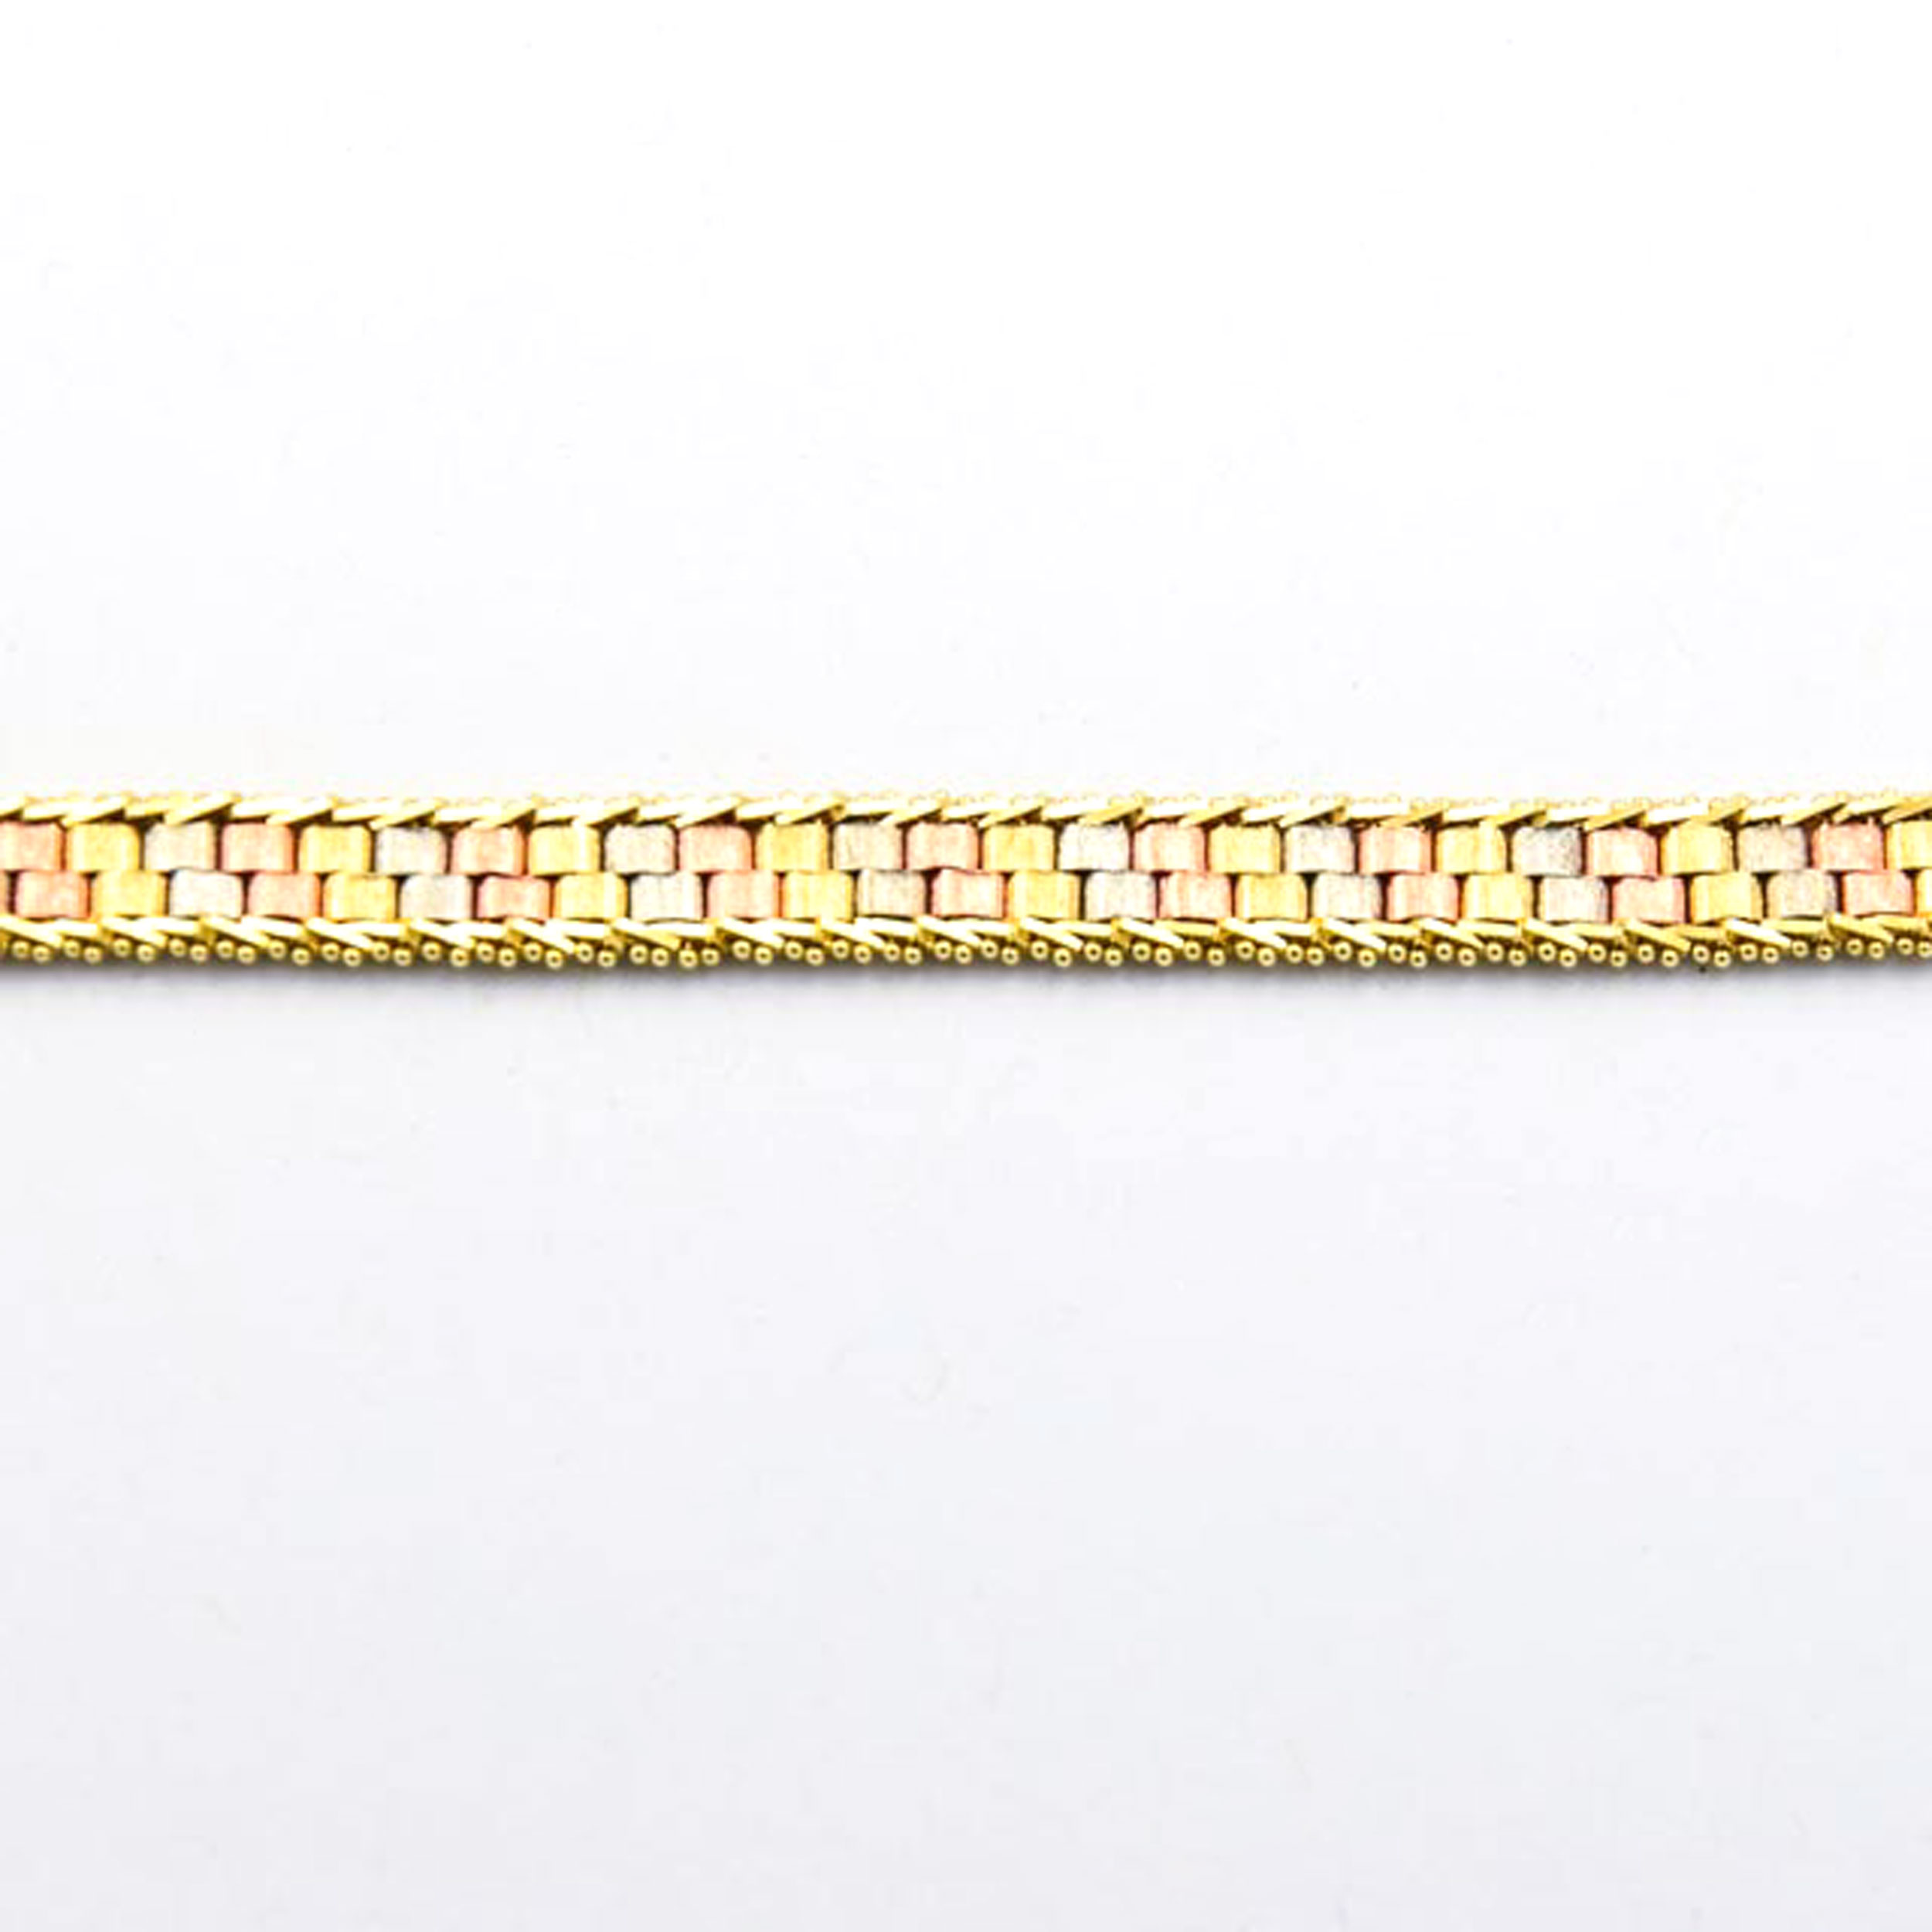 Armband aus 585 Gelb-, Rot- und Weißgold, nachhaltiger second hand Schmuck perfekt aufgearbeitet